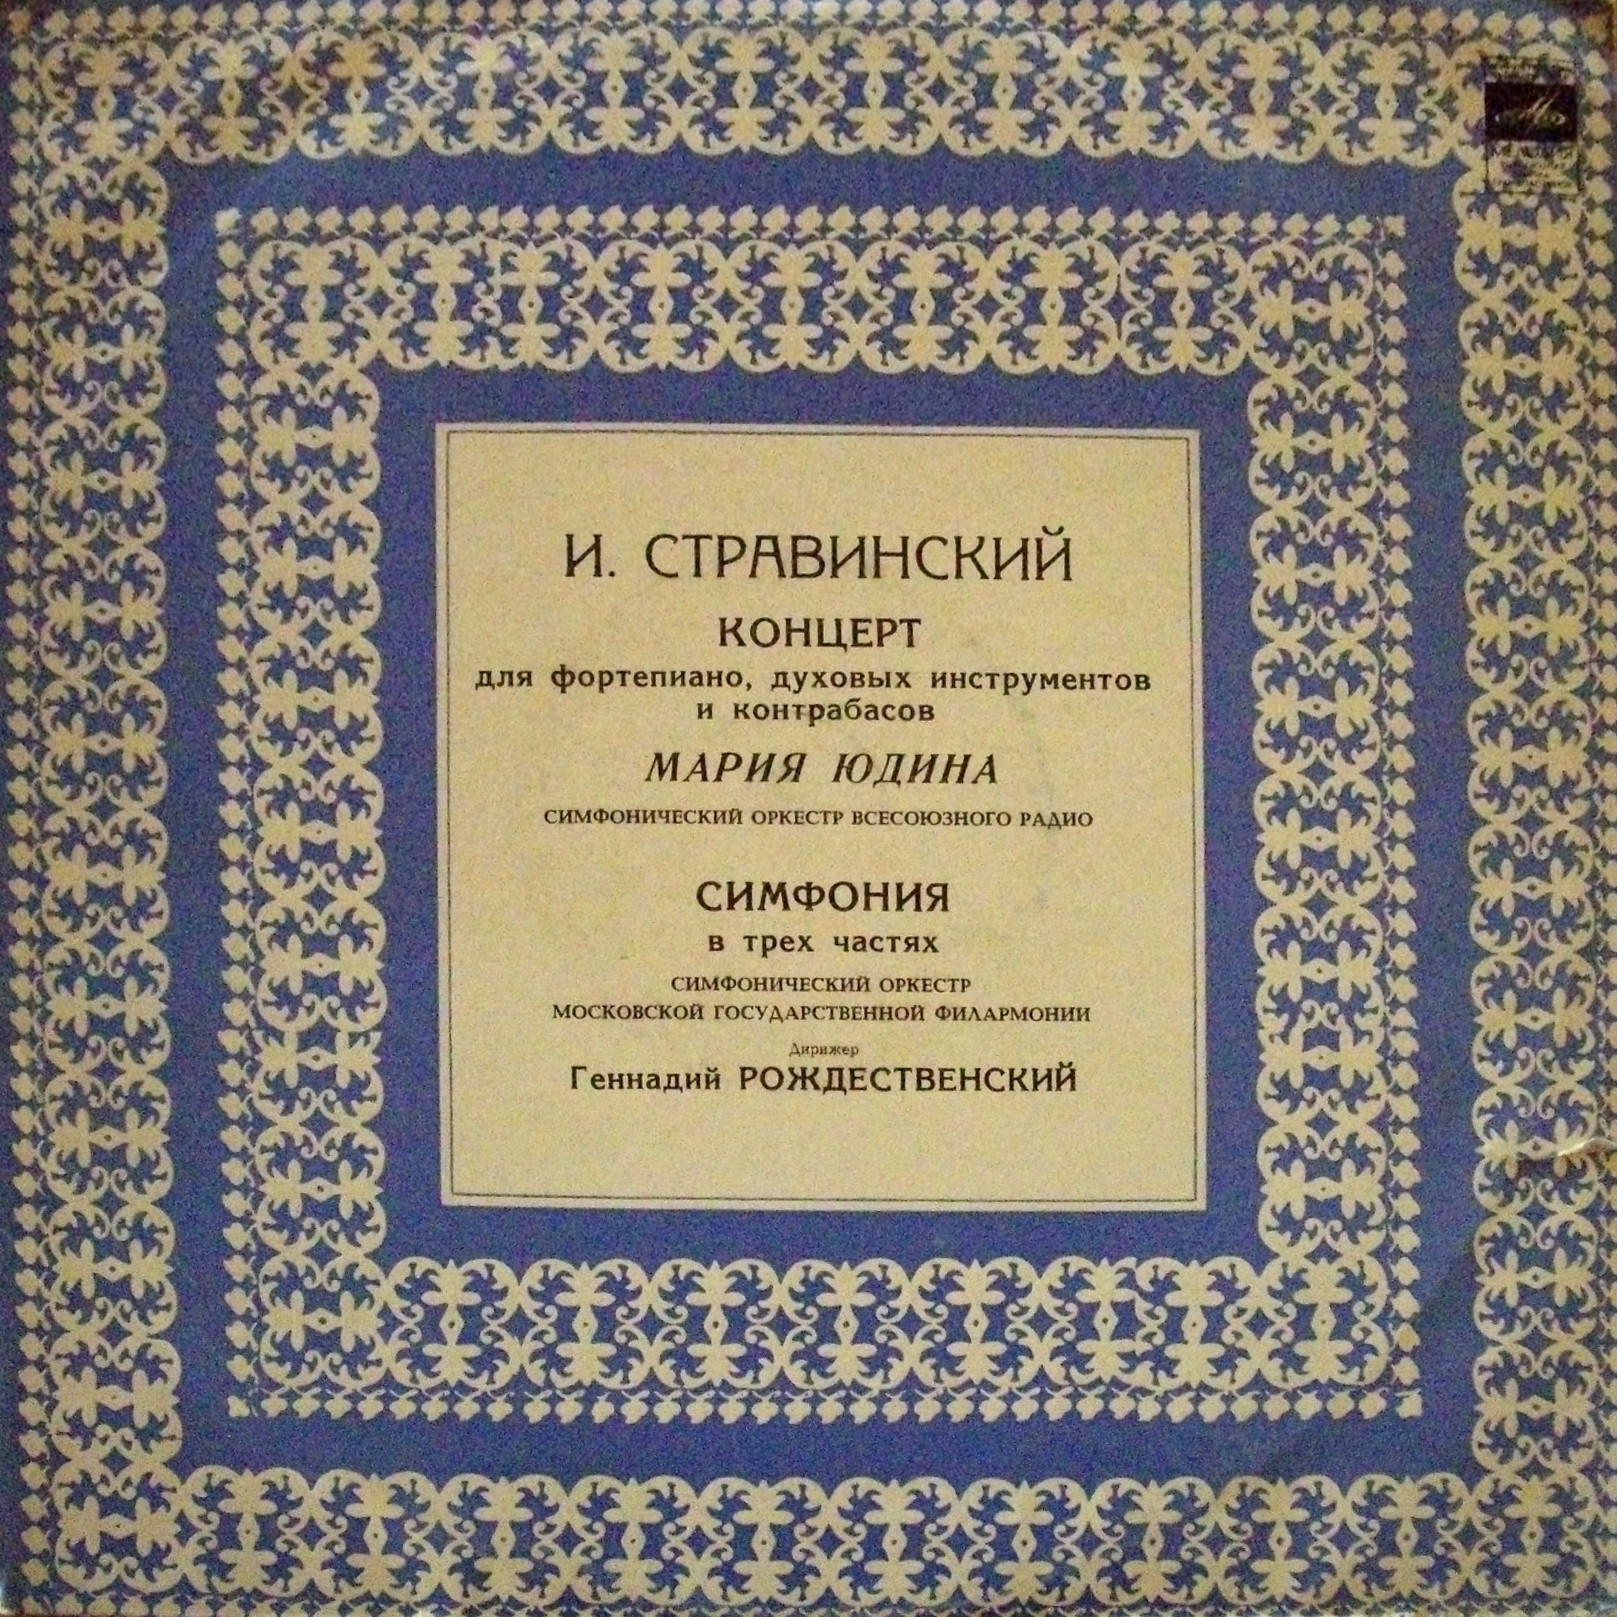 И. Стравинский: Концерт для ф-но, Симфония (М. Юдина, Г. Рождественский)